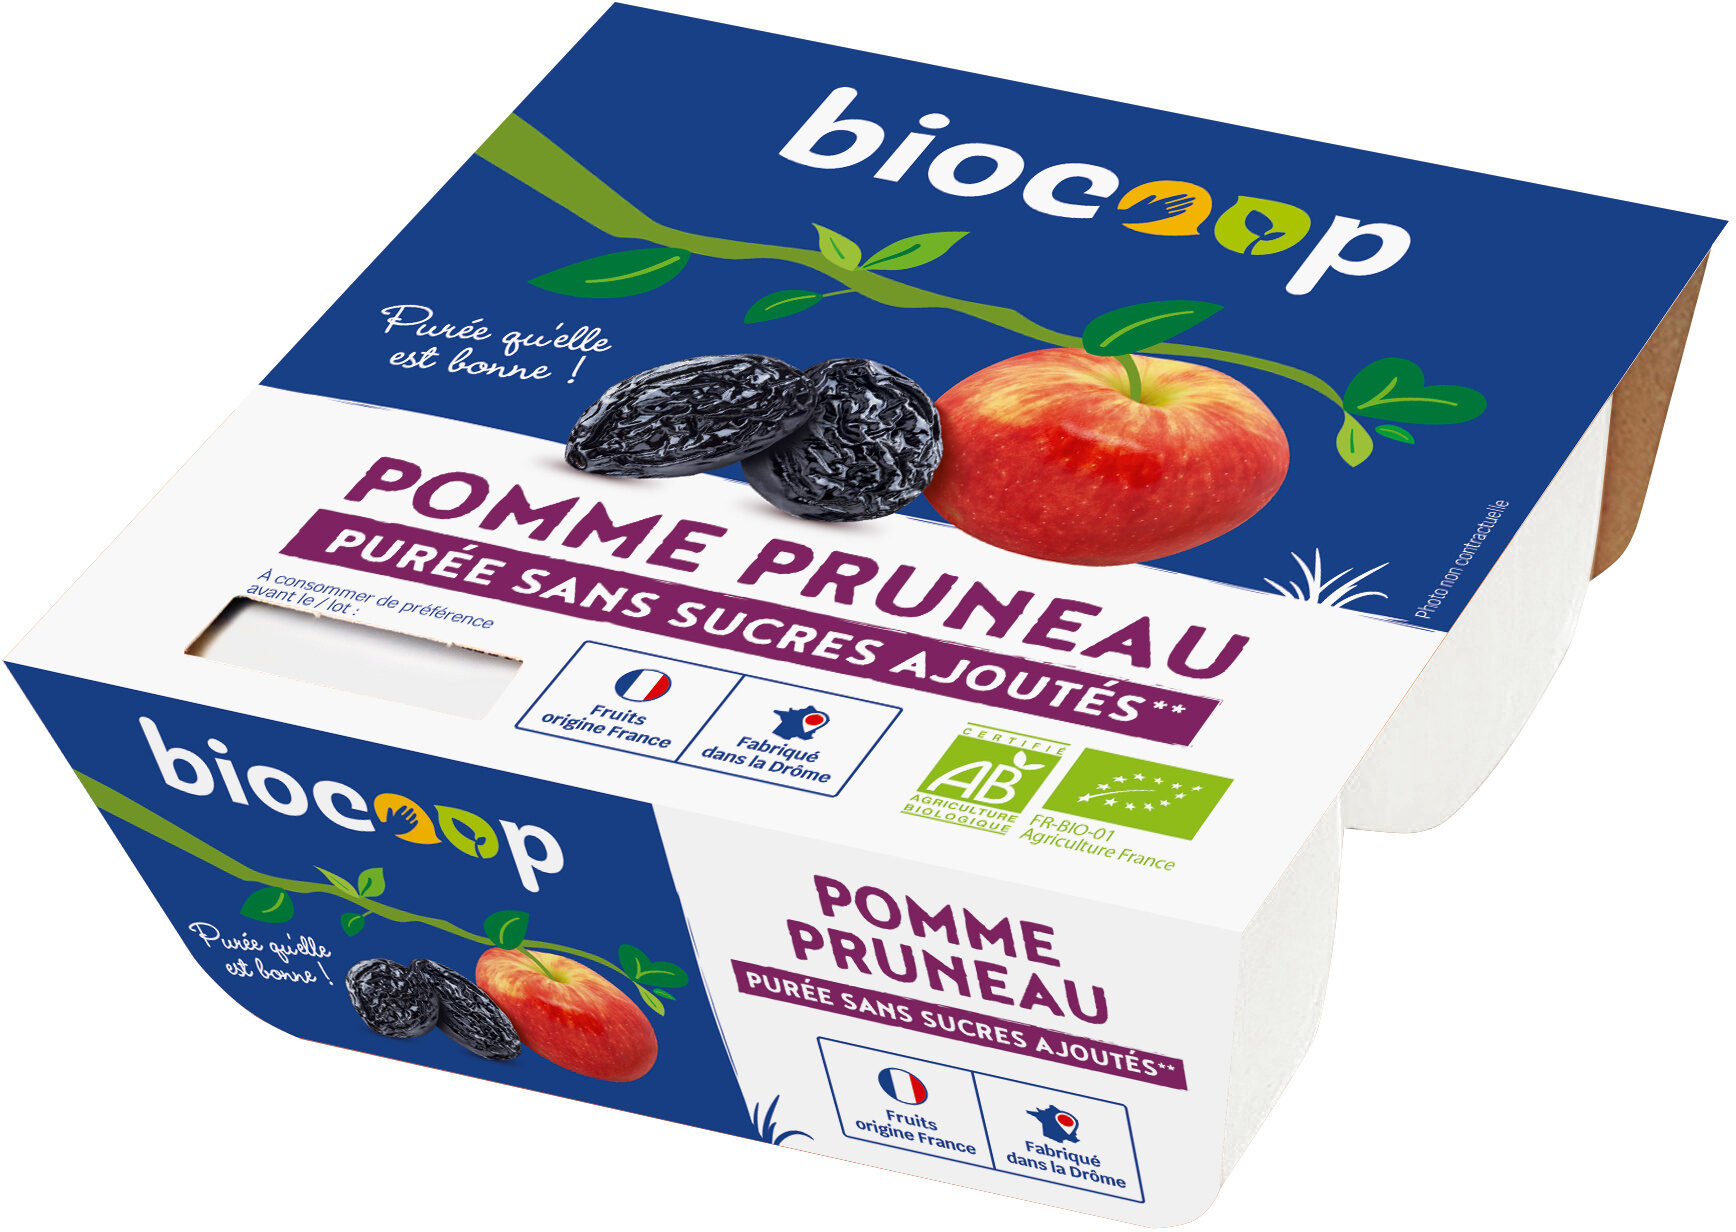 Purée pomme pruneau - Product - fr